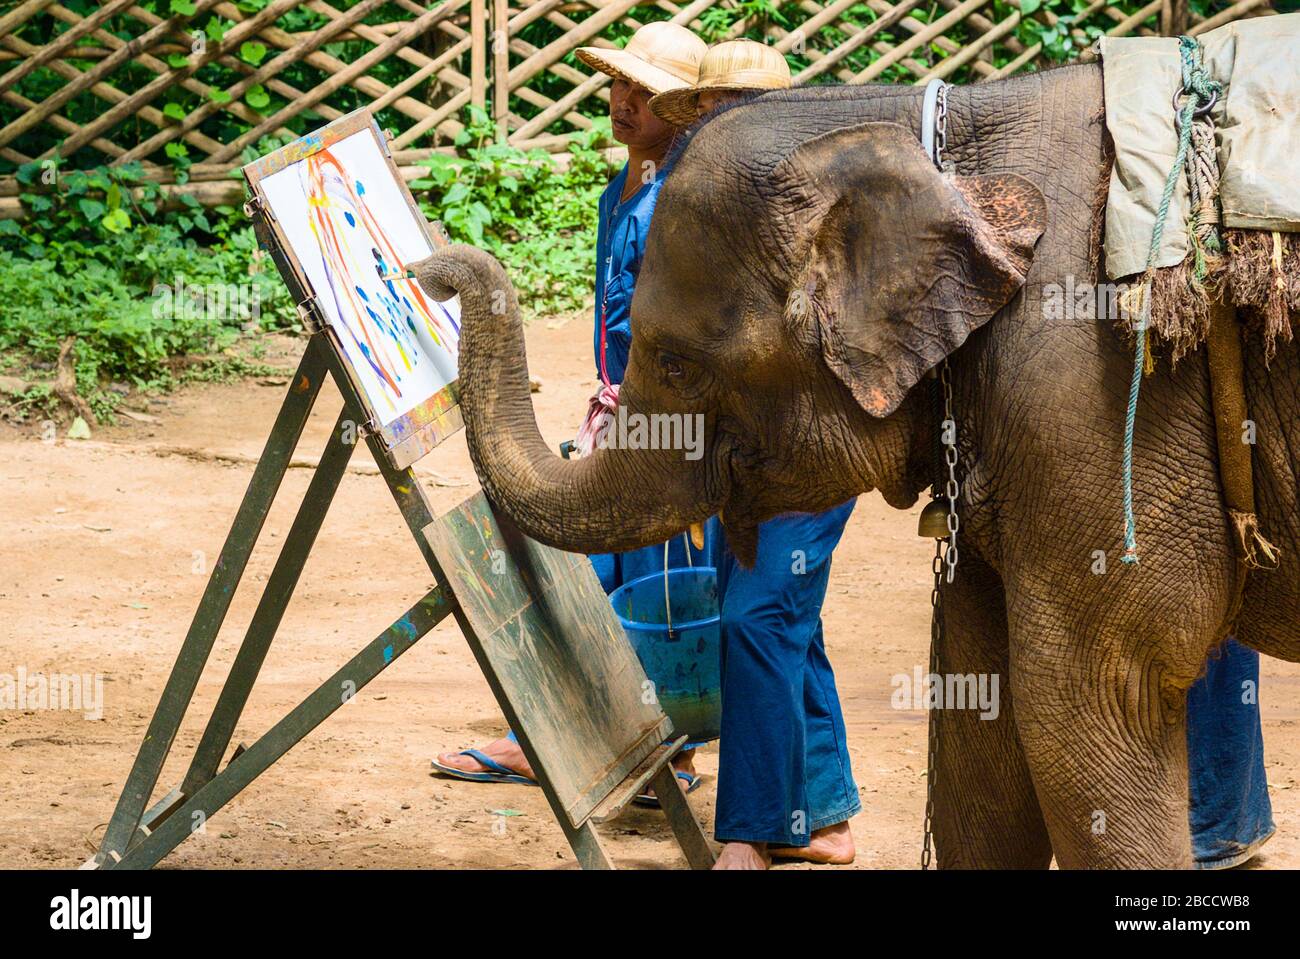 El Centro de Entrenamiento de elefantes Chiang Dao, fundado en 1969. El Centro tiene uno de los paisajes naturales más hermosos de Chiang Mai, Tailandia Foto de stock